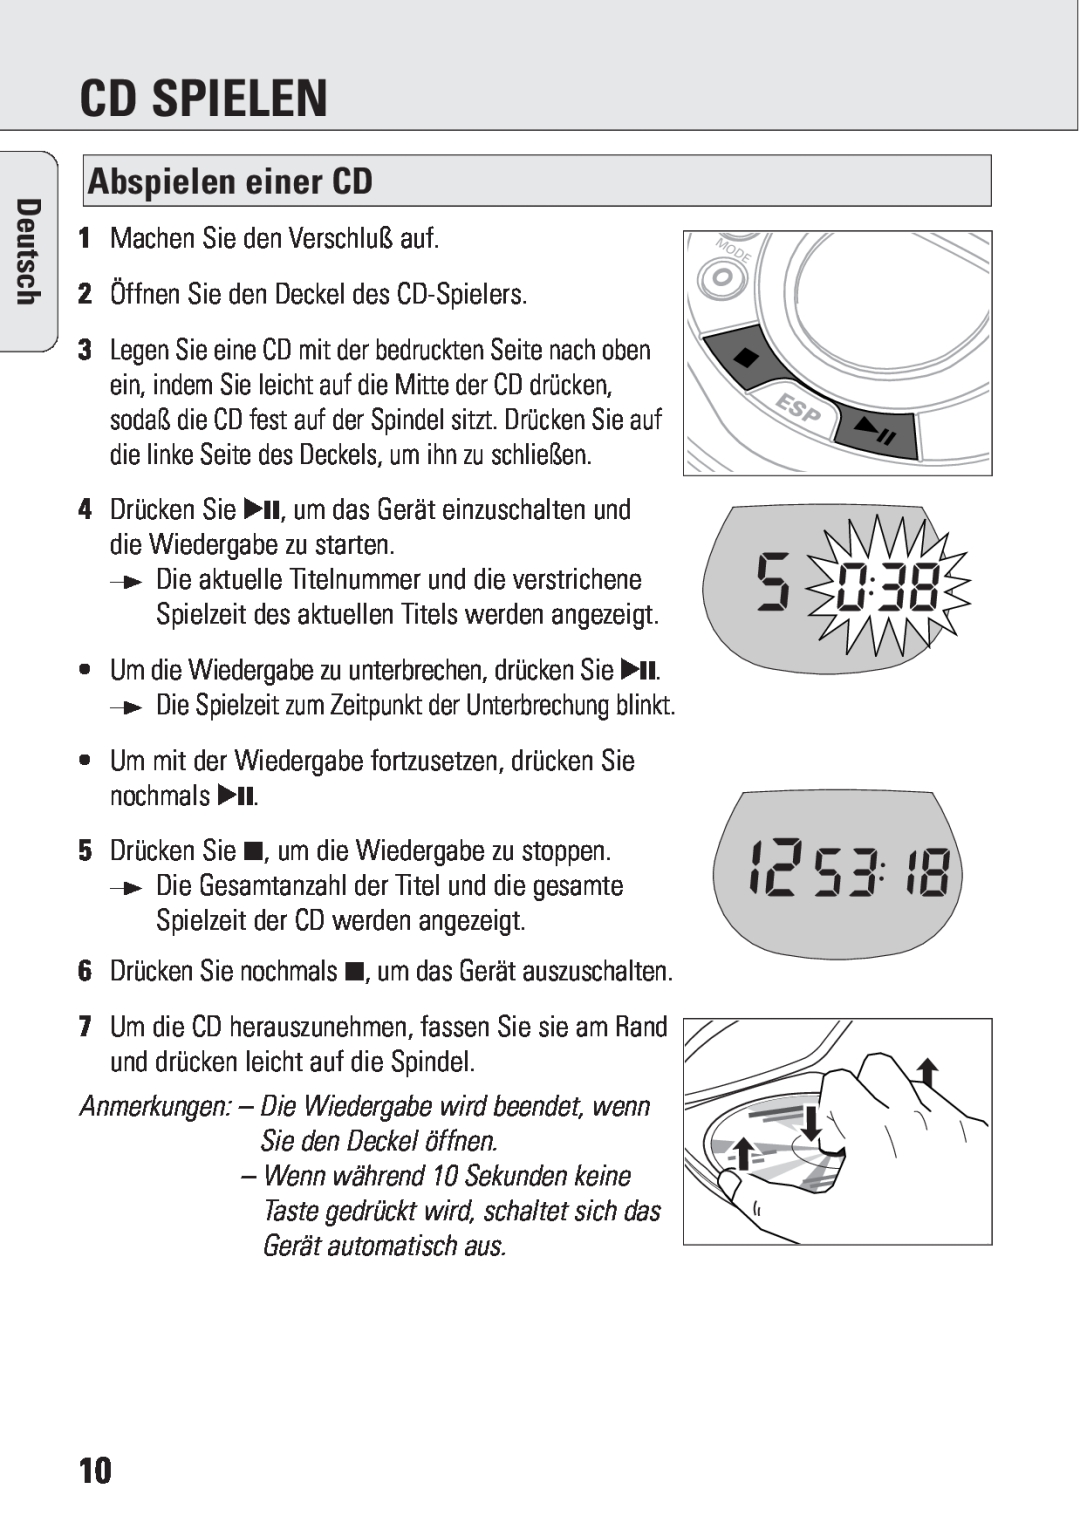 Philips ACT 7583 manual Cd Spielen, Abspielen einer CD, Deutsch 